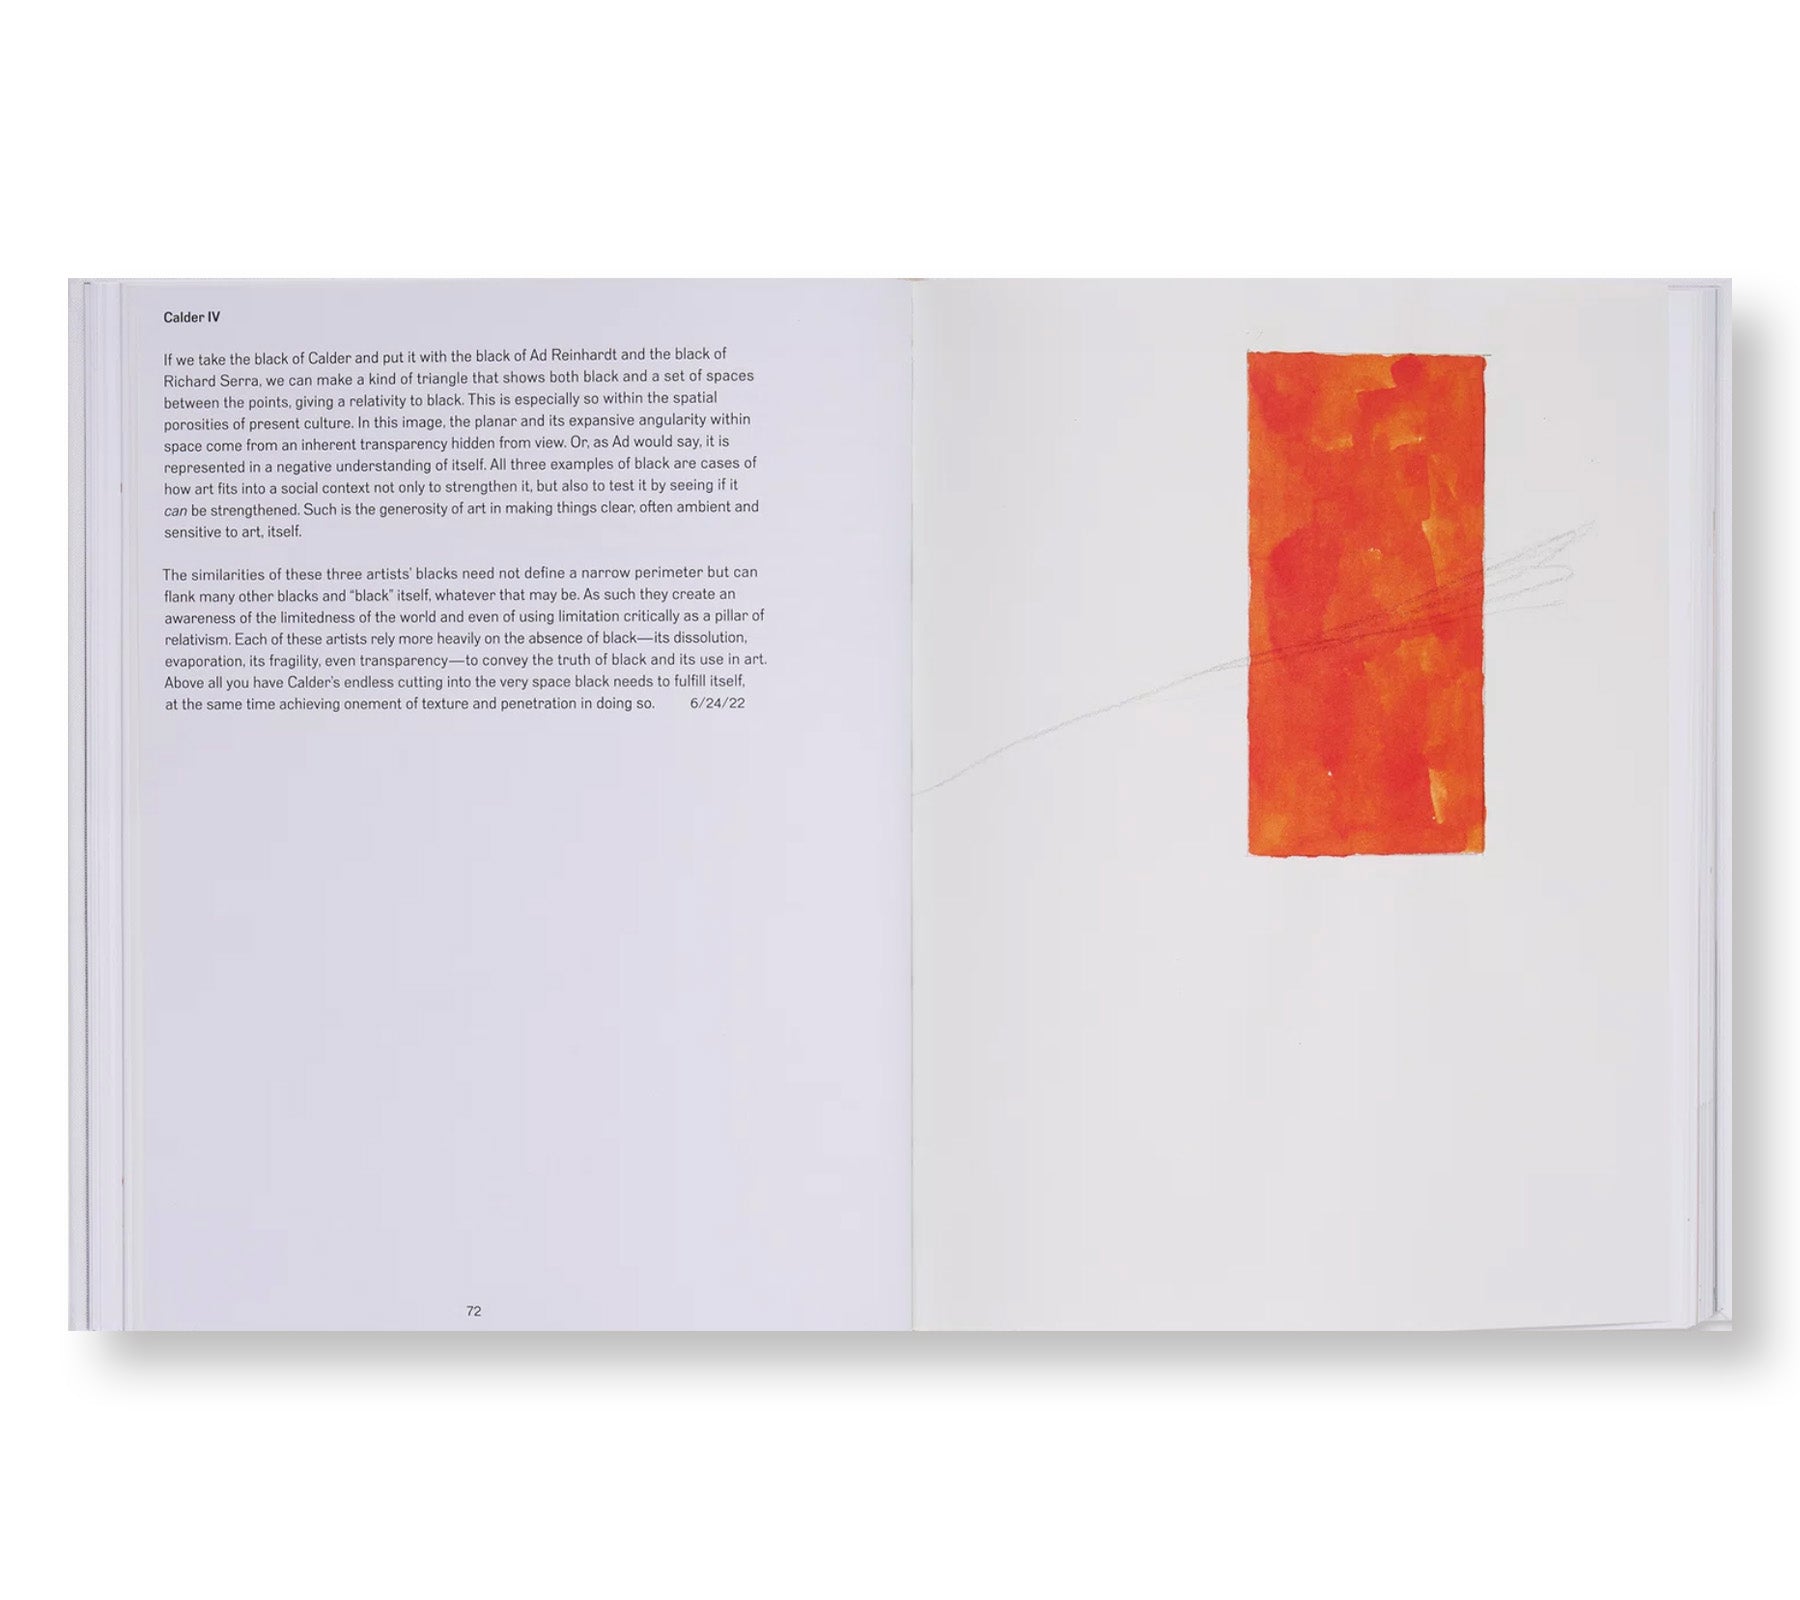 CALDER/TUTTLE: TENTATIVE by Alexander Calder, Richard Tuttle